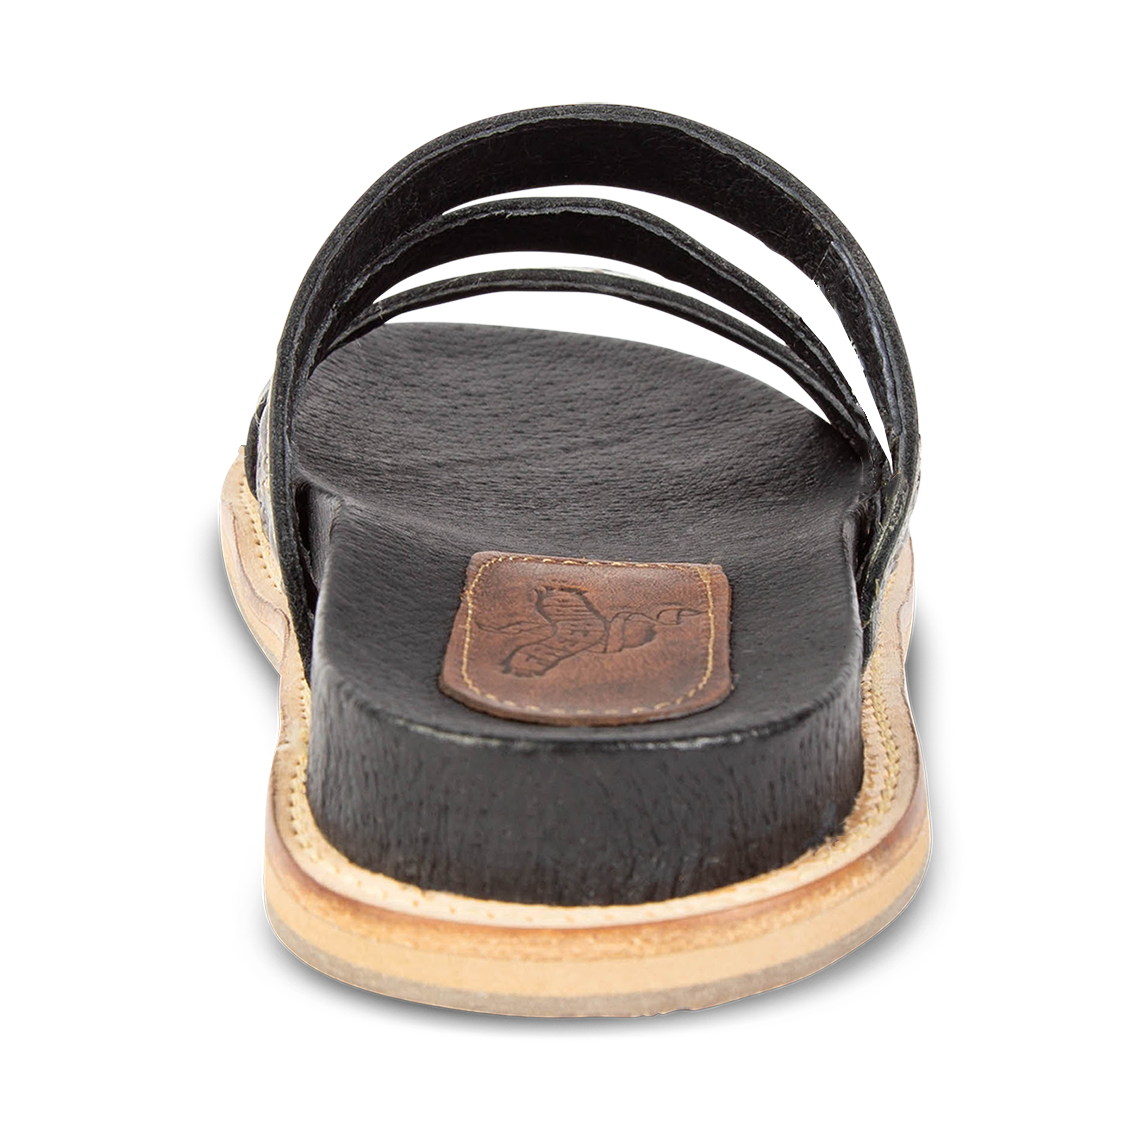 Back view showing flat heel on FREEBIRD women's Florence black slip-on flat shoe featuring metal stud detailing